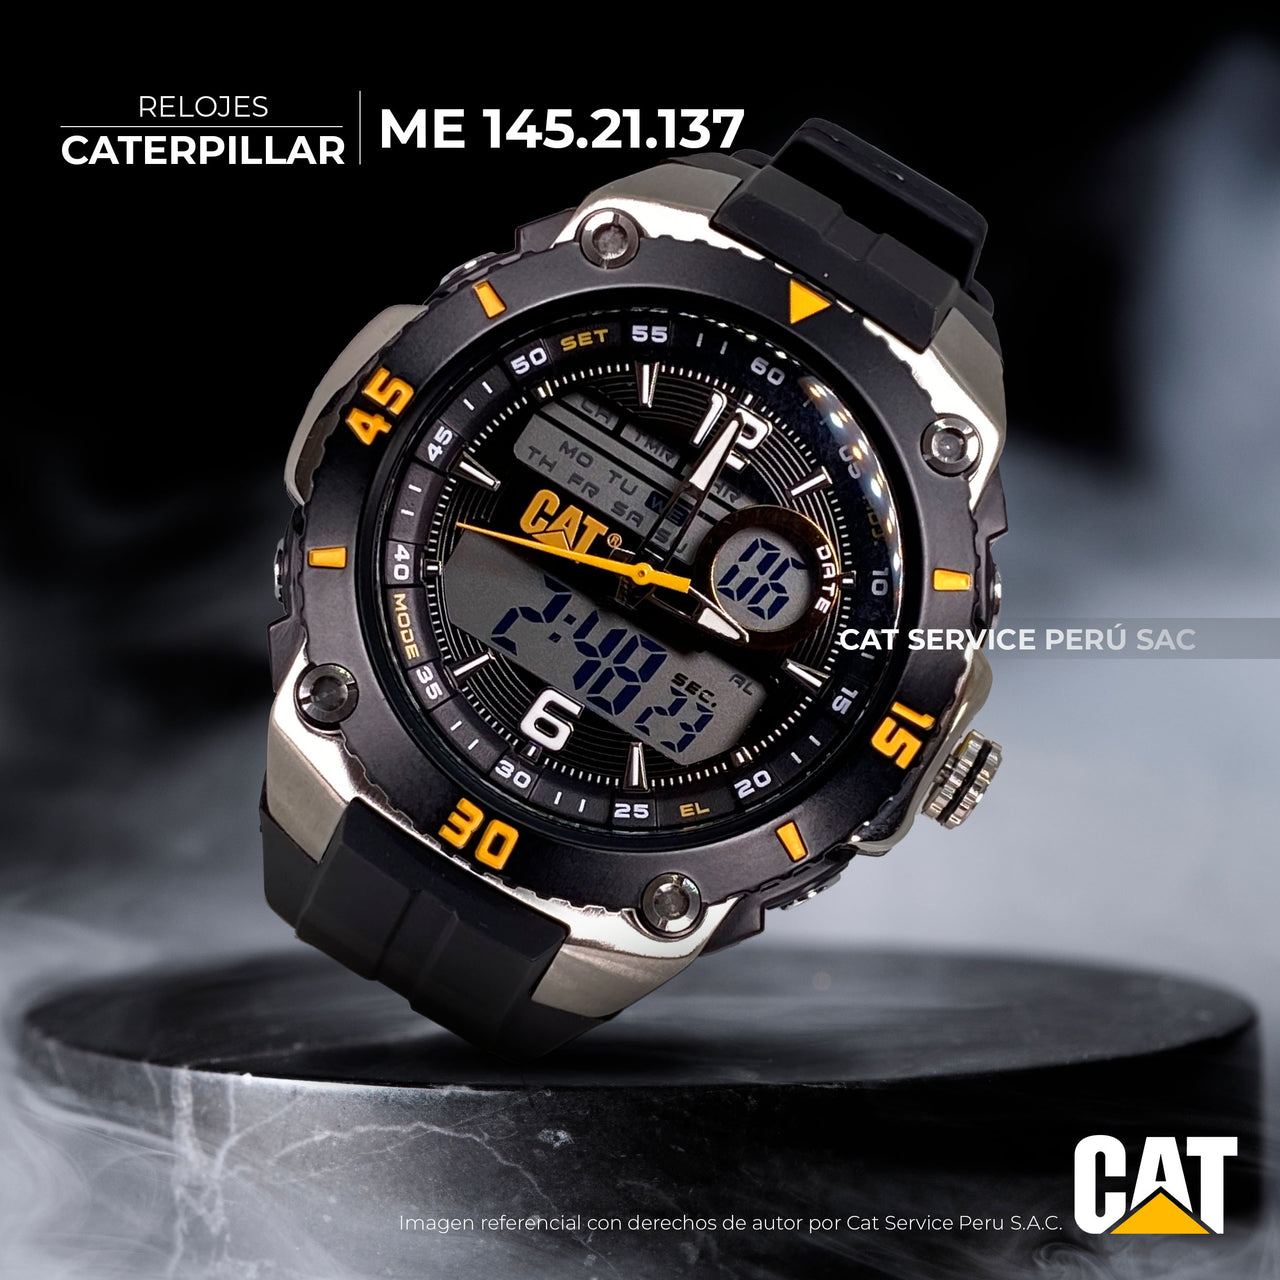 Reloj Cat ME 145.21.137